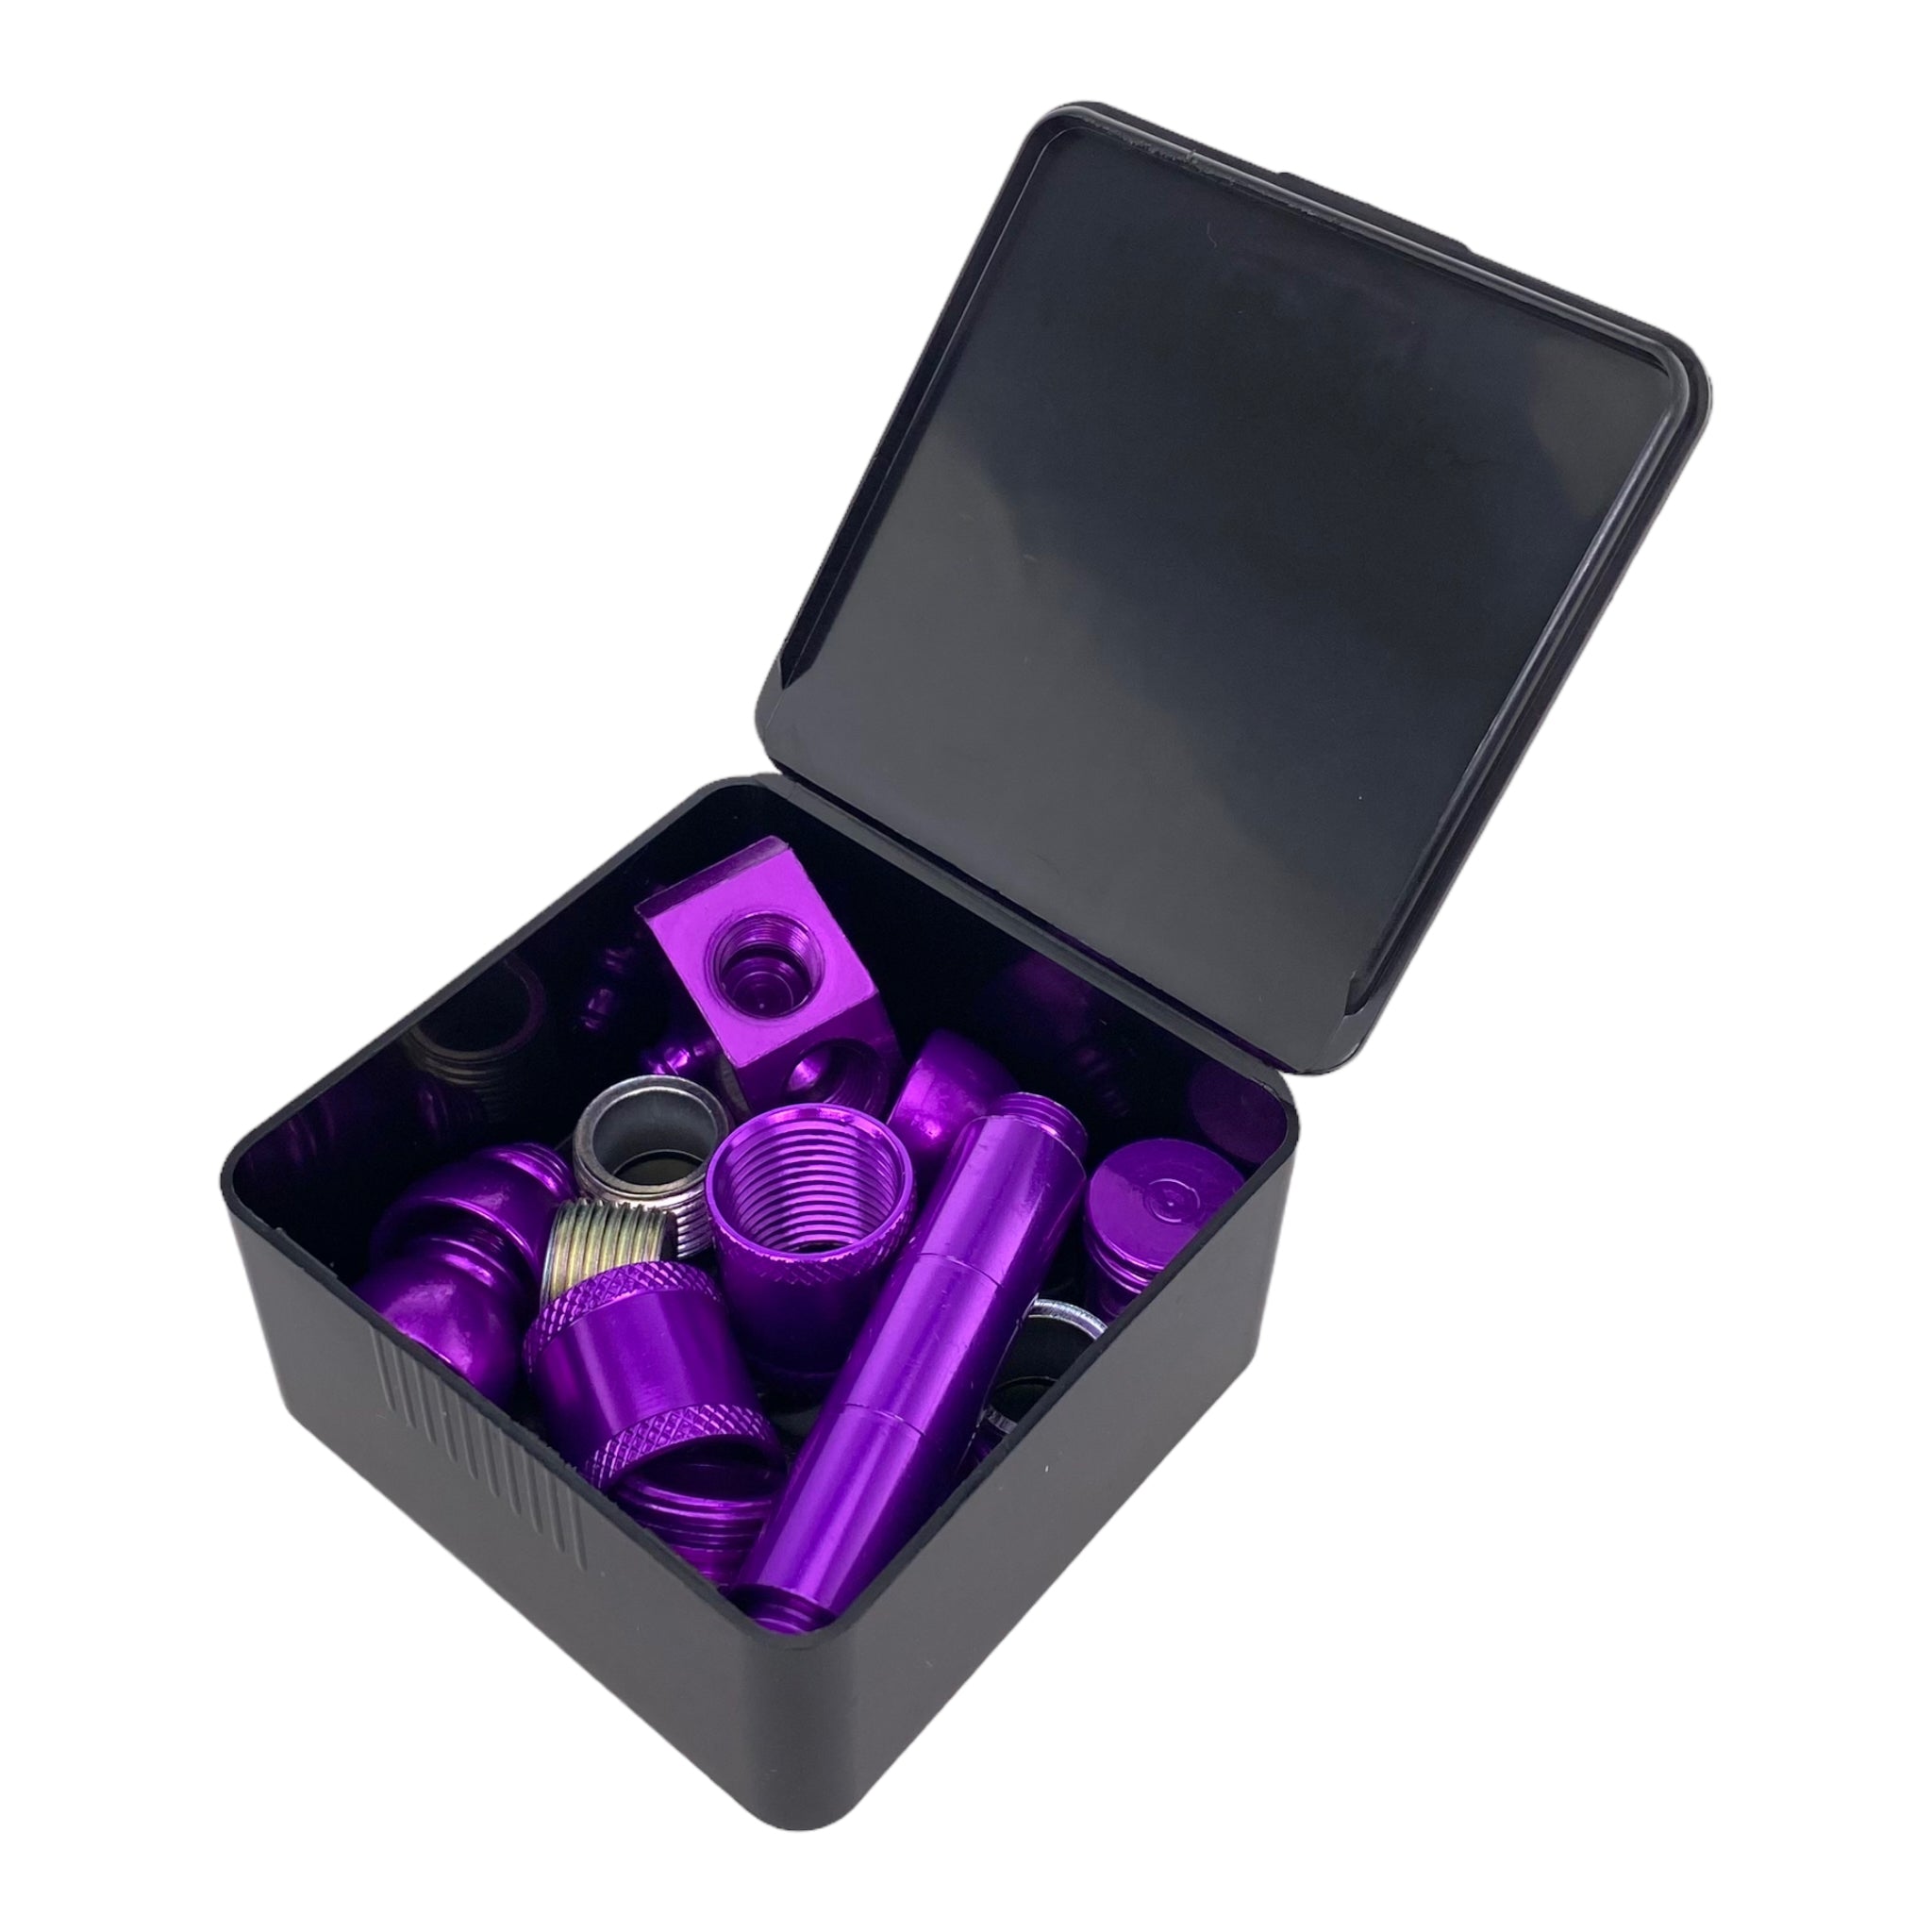 Aluminum Metal smoking Pipe Makers Kit in Purple